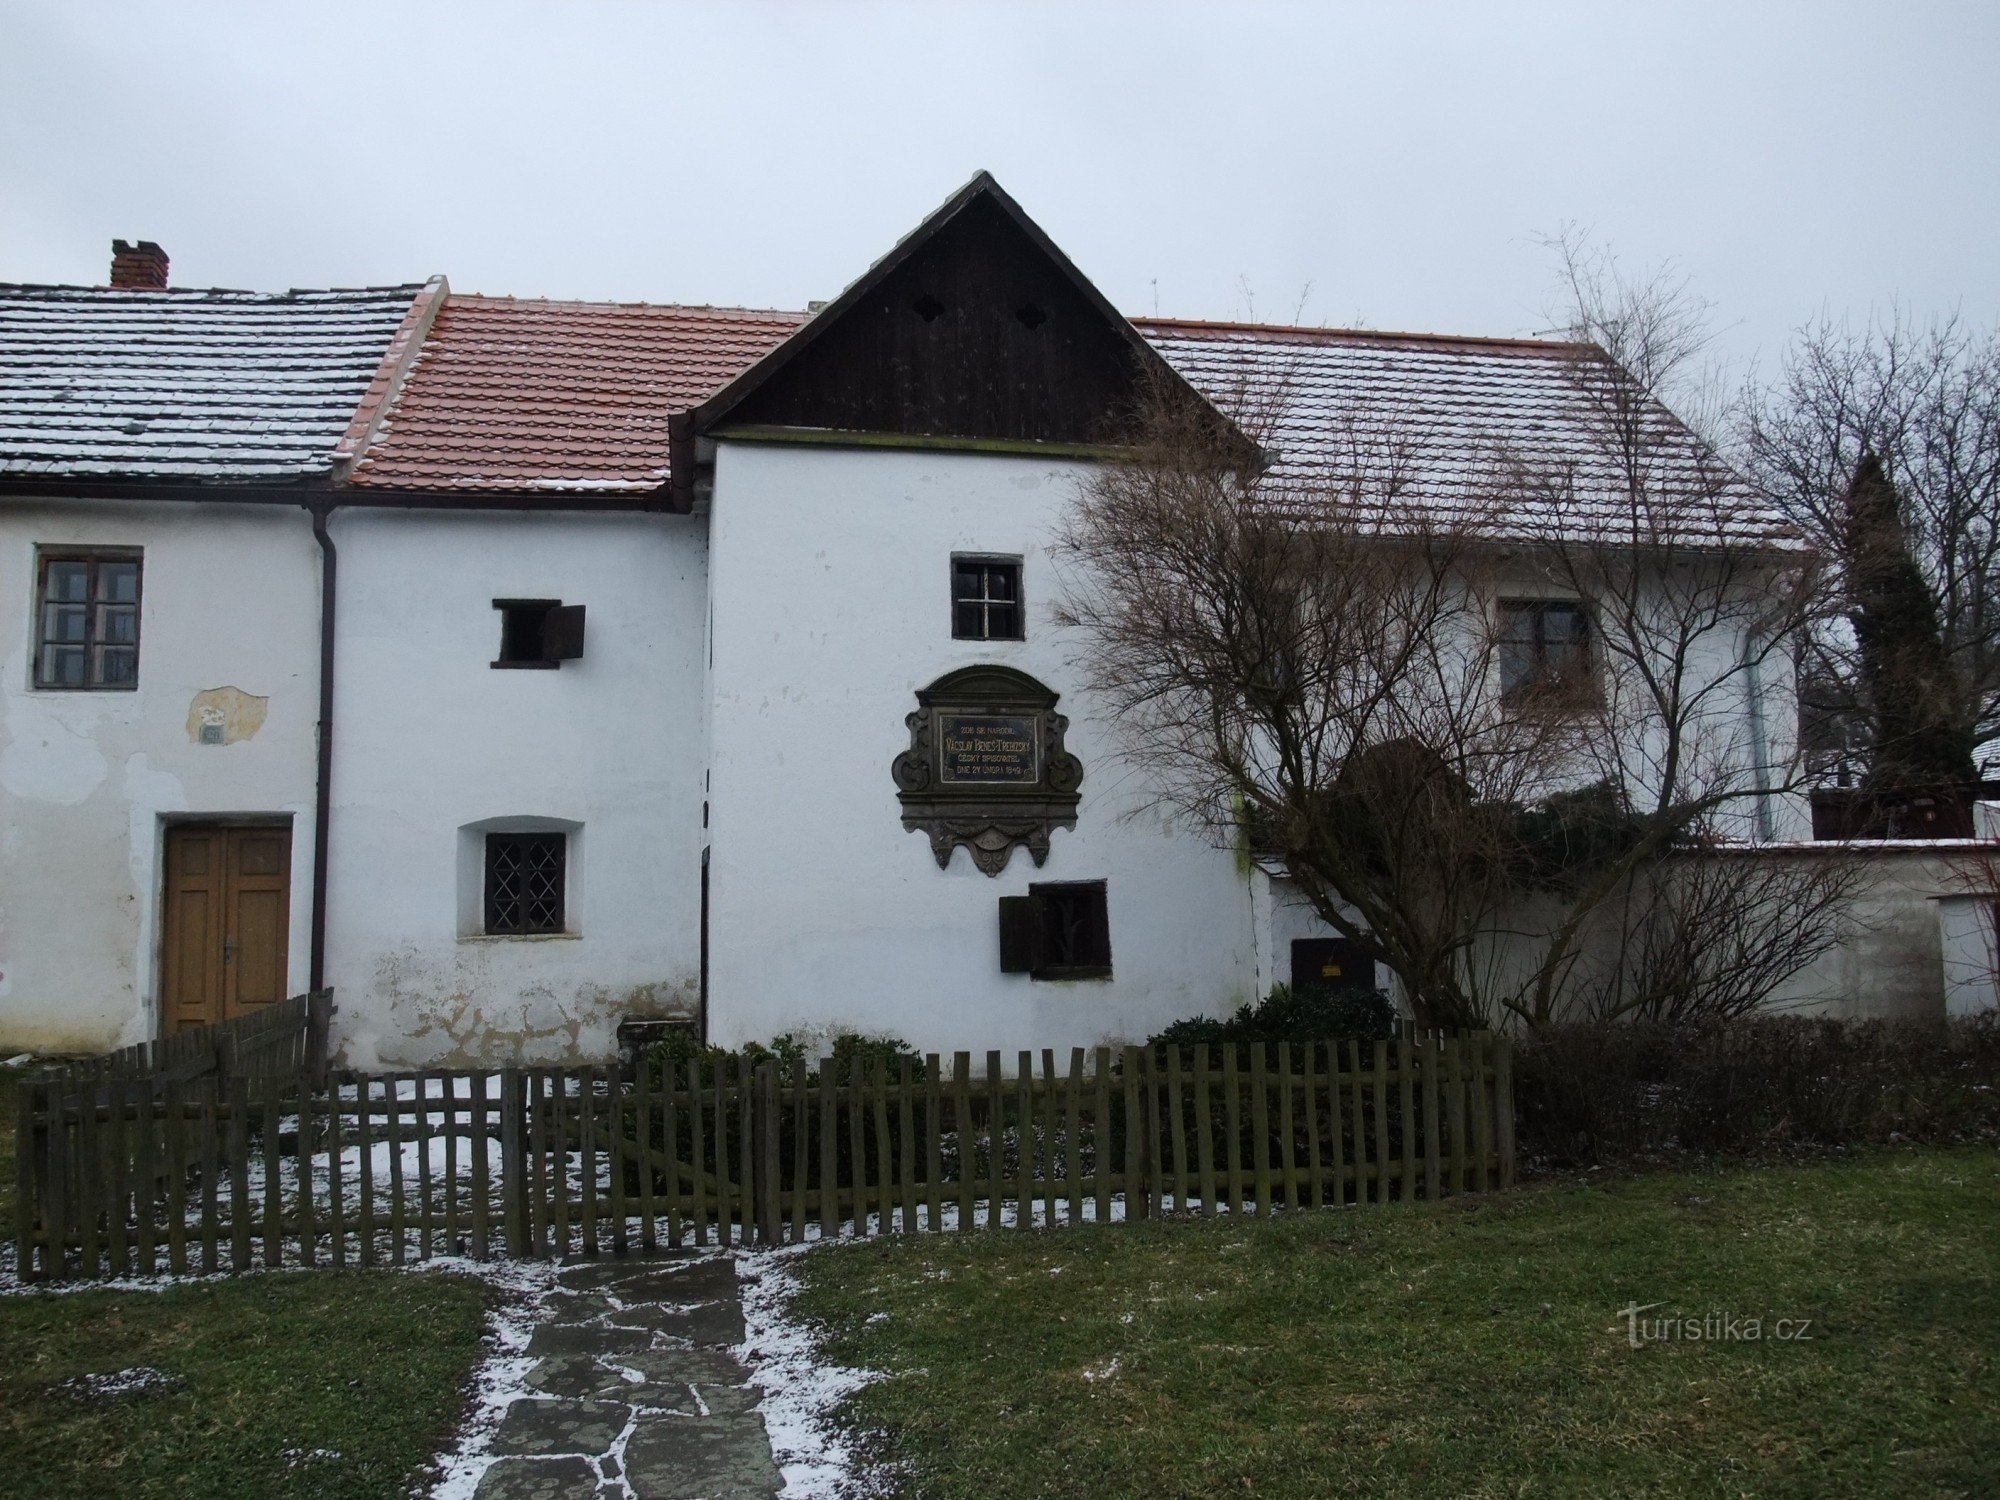 The birthplace of Václav Beneš Třebízský